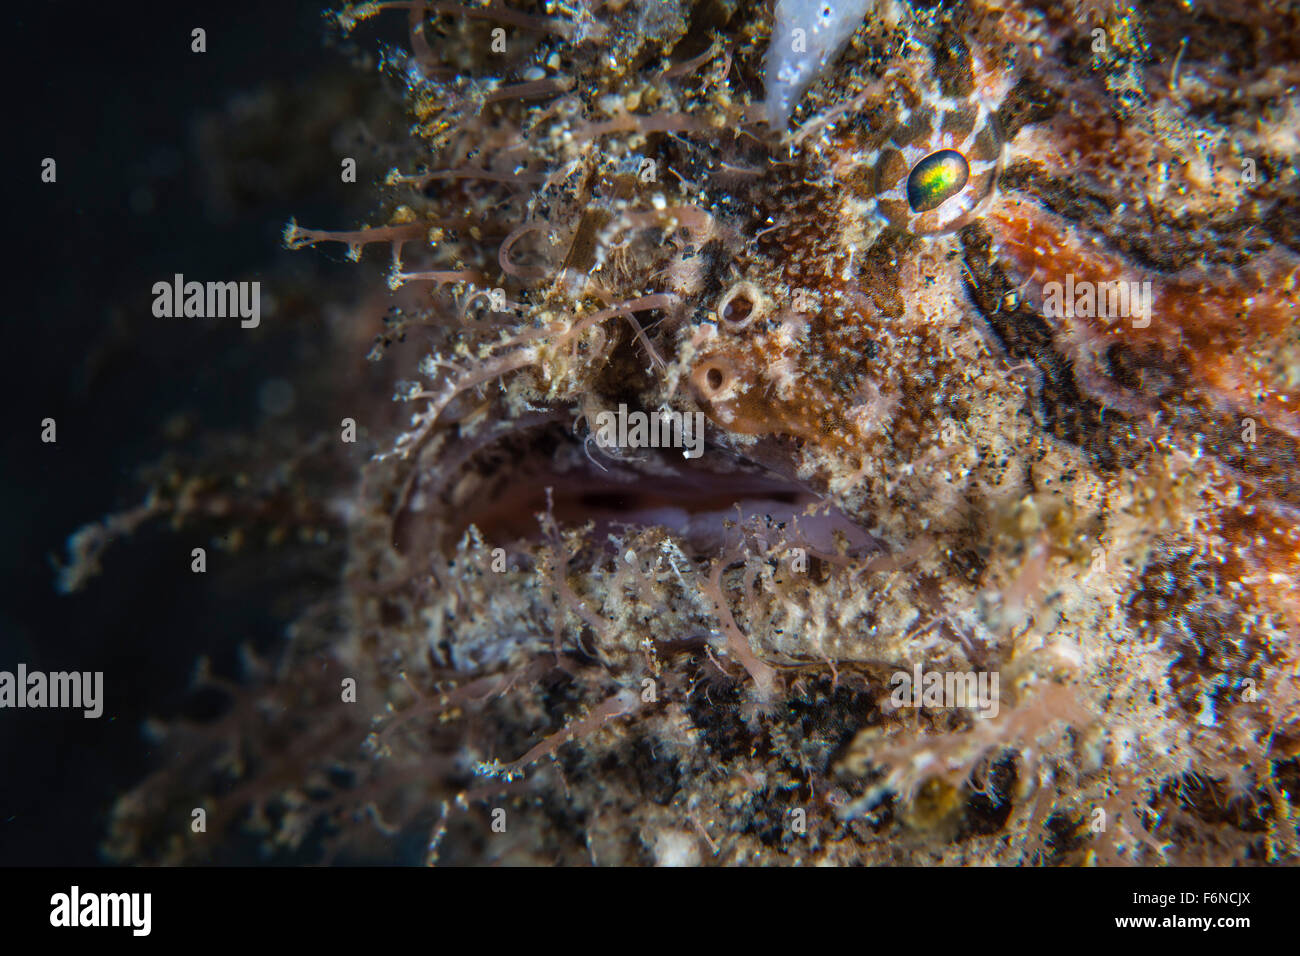 Una rana pescatrice peloso (Antennarius striatus) attende di imboscata preda su un reef nello stretto di Lembeh, Indonesia. Questa zona è conosciuta per i suoi e Foto Stock